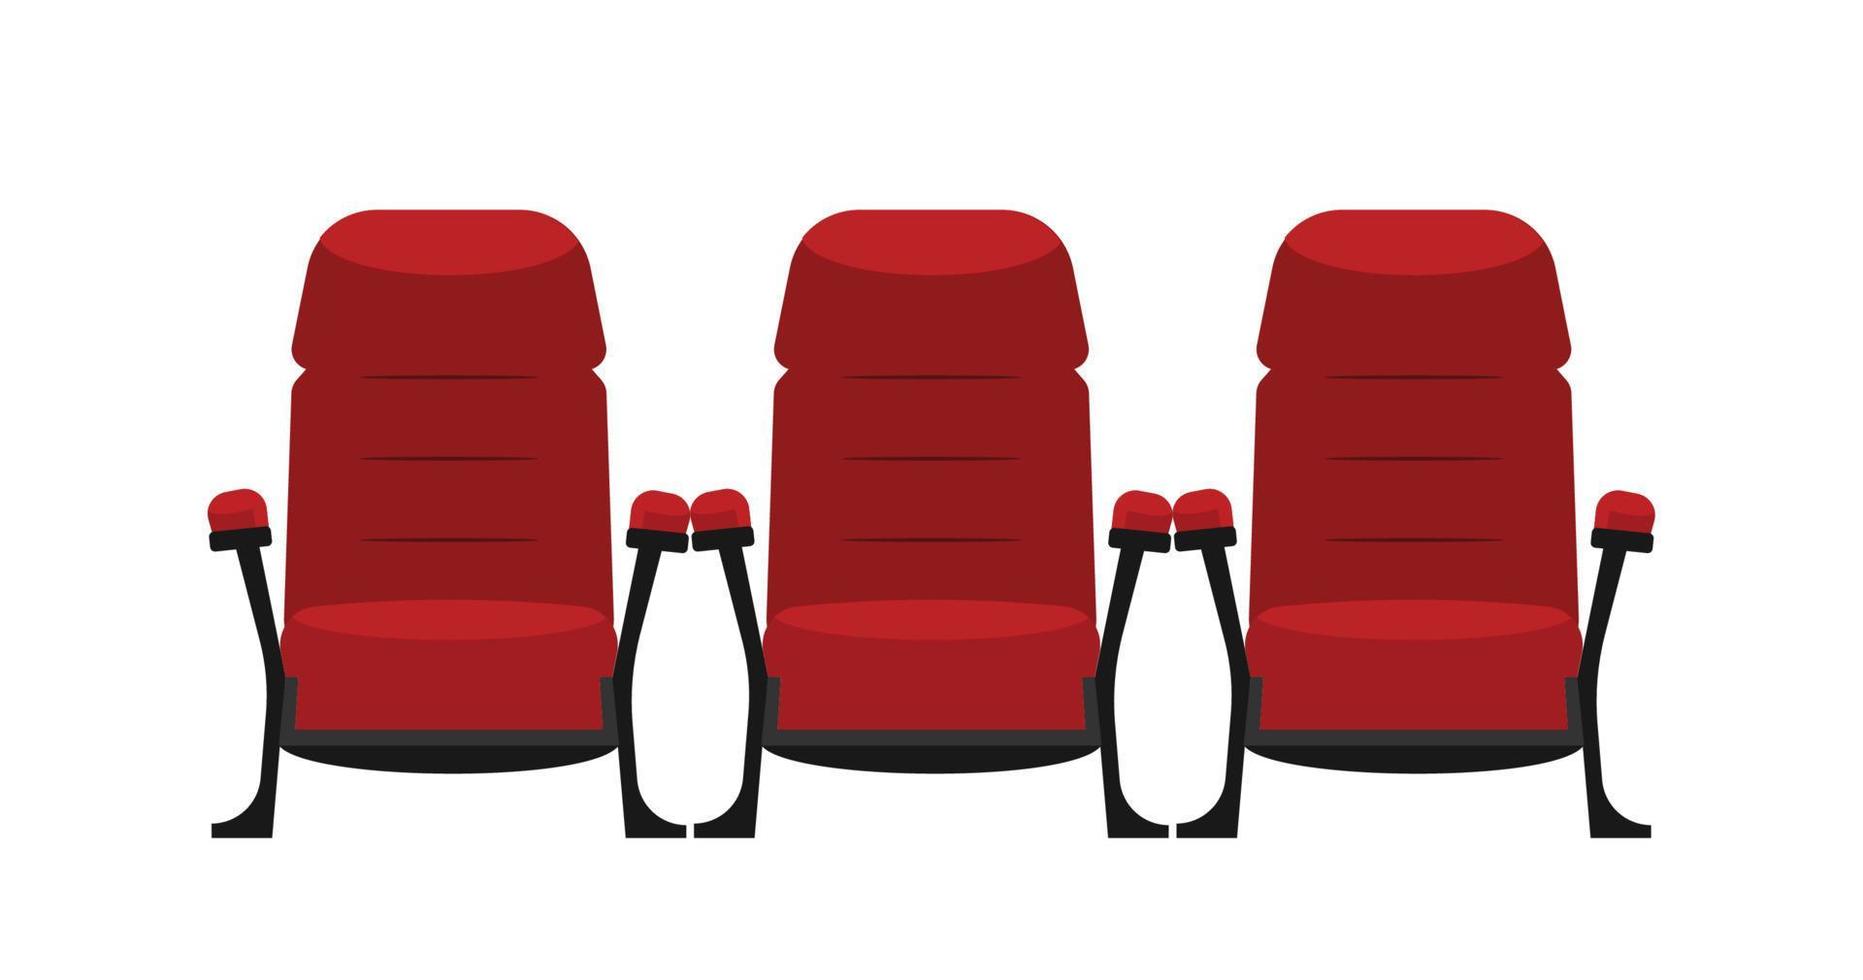 concepto de cine - vista frontal de la silla de cine roja vector